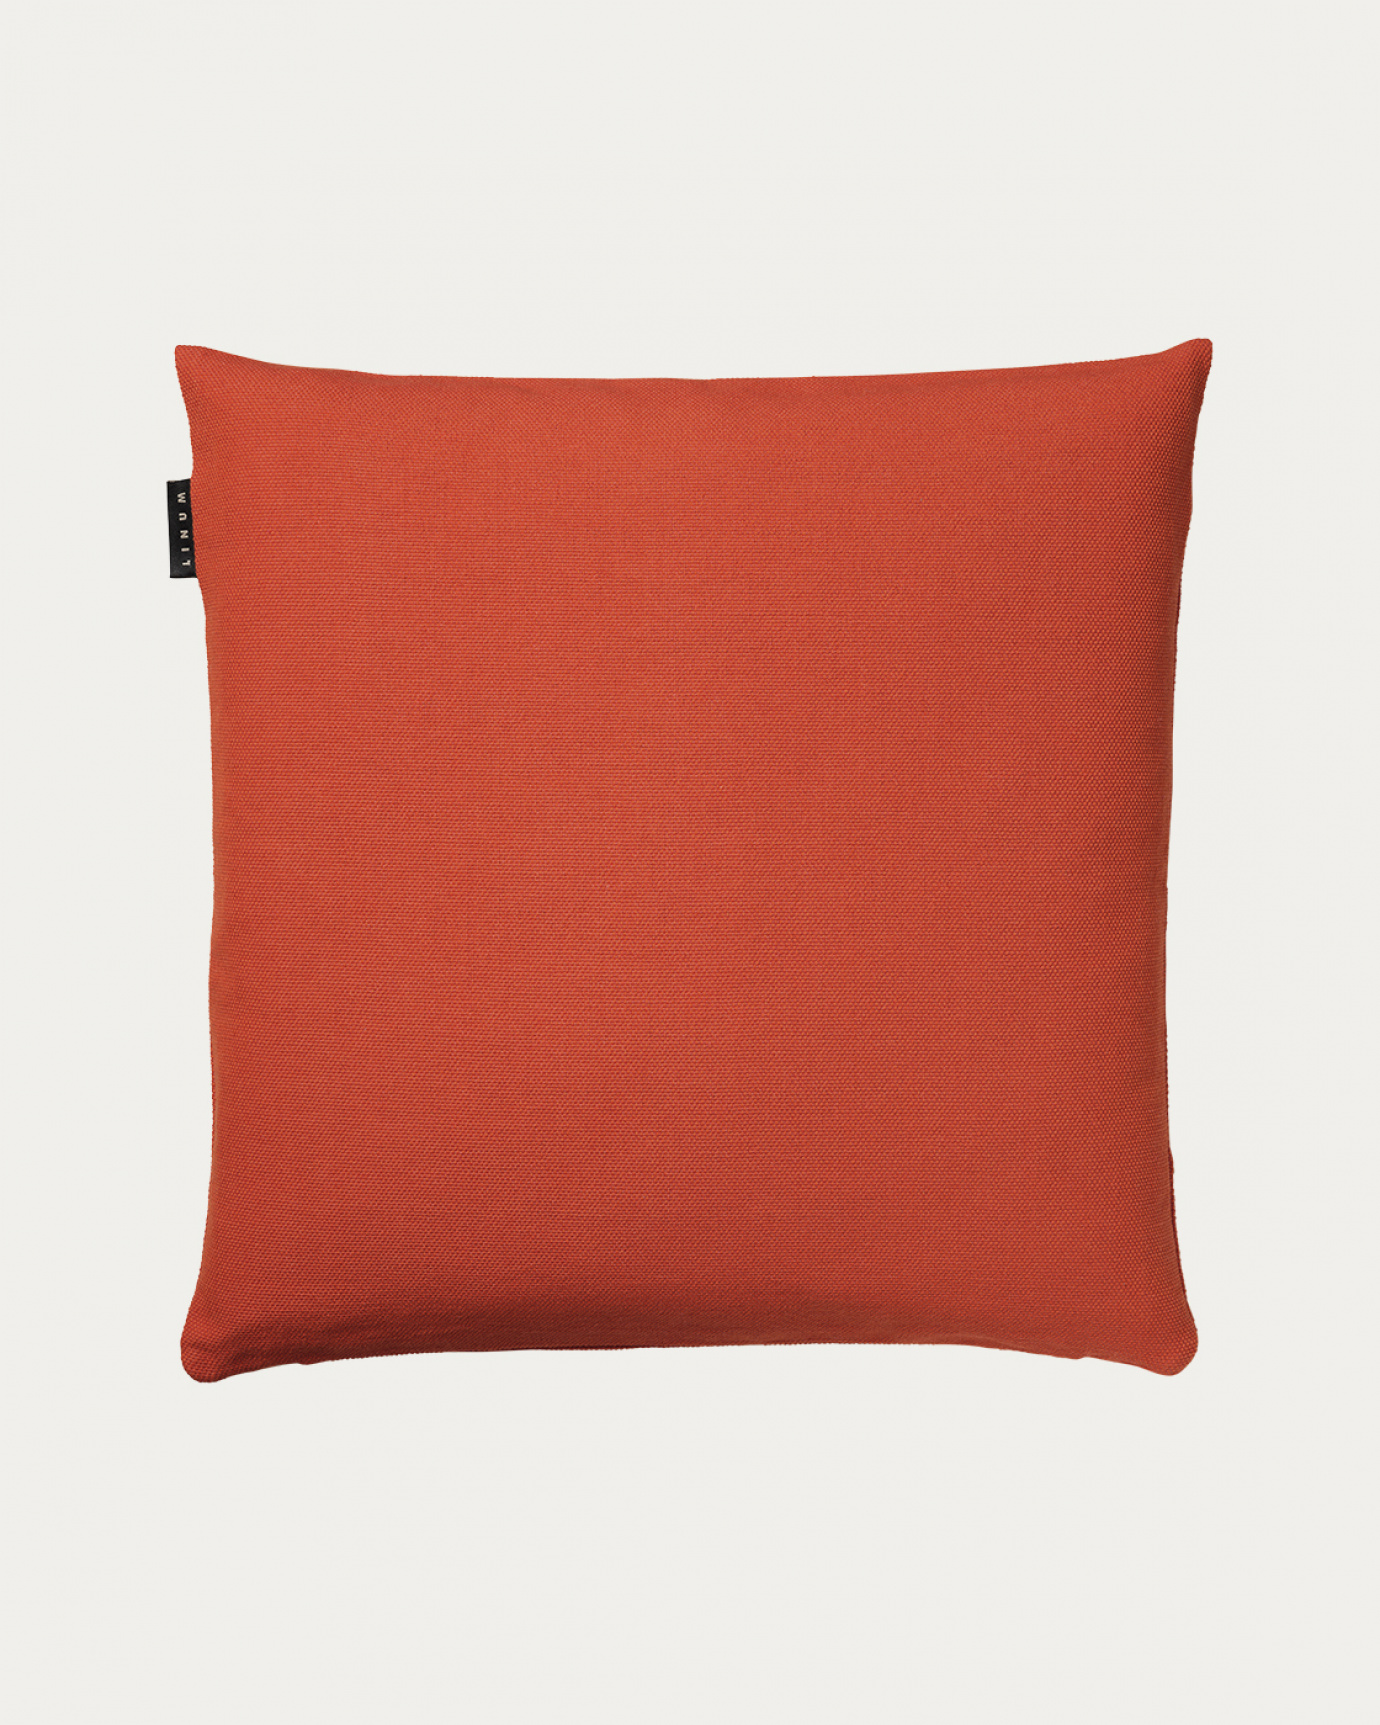 Produktbild rostorange PEPPER Kissenhülle aus weicher Baumwolle von LINUM DESIGN. Einfach zu waschen und langlebig für Generationen. Größe 50x50 cm.